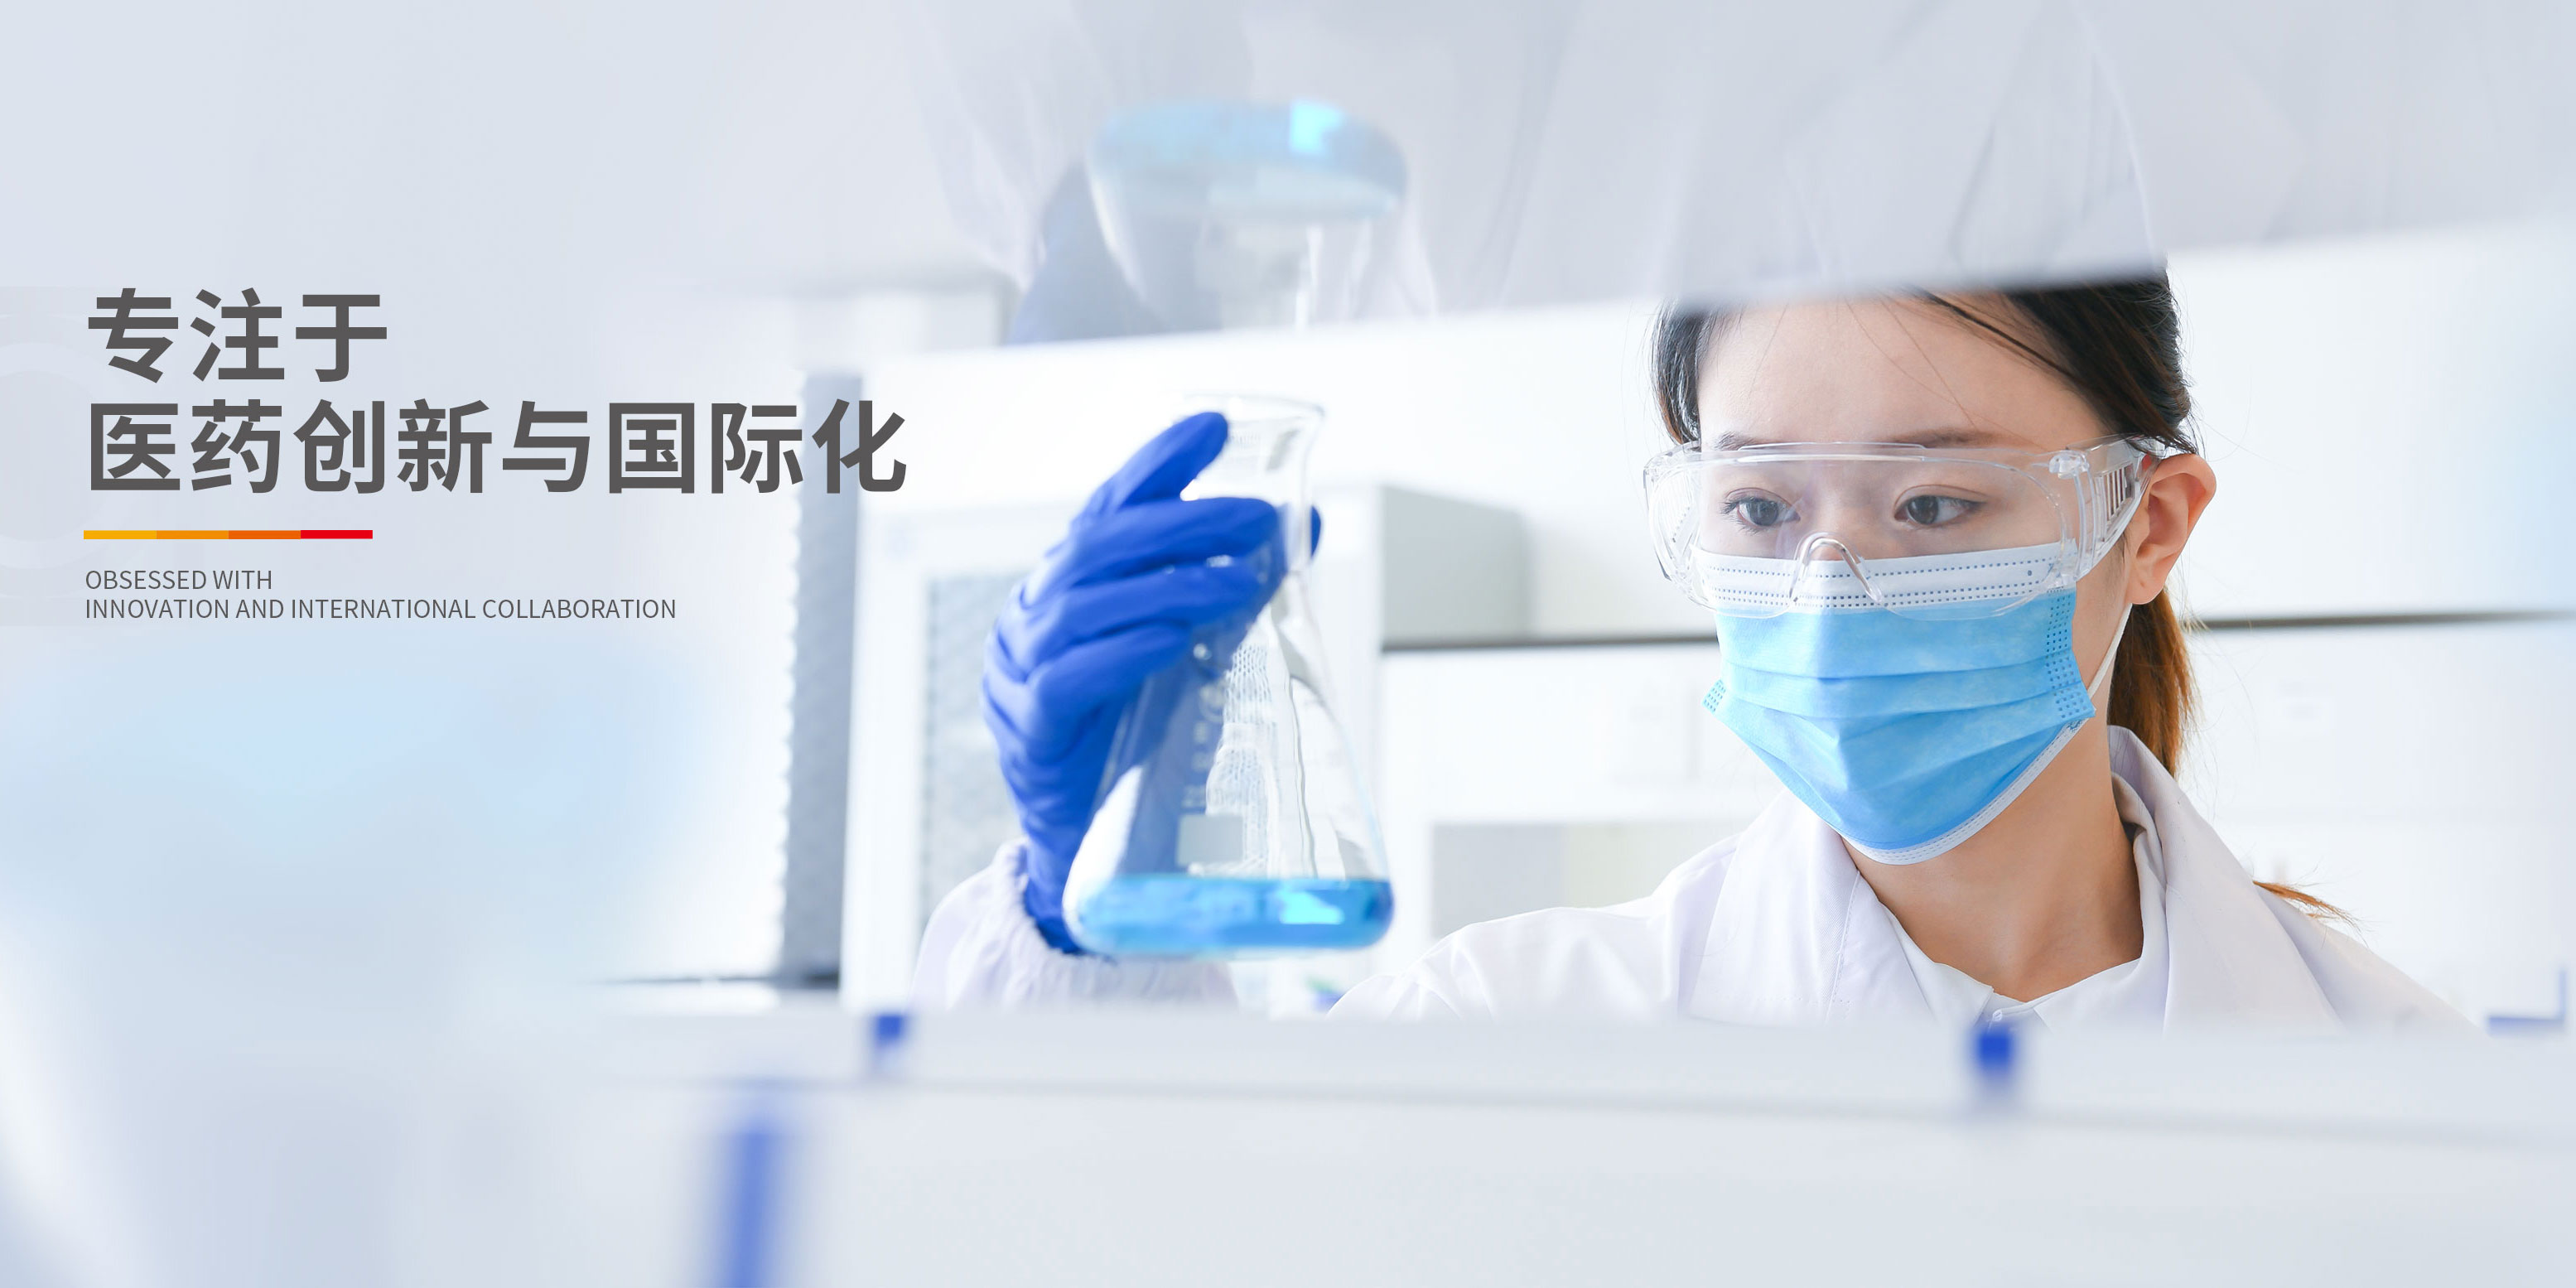 中國抗腫瘤、肝病領域的知名企業